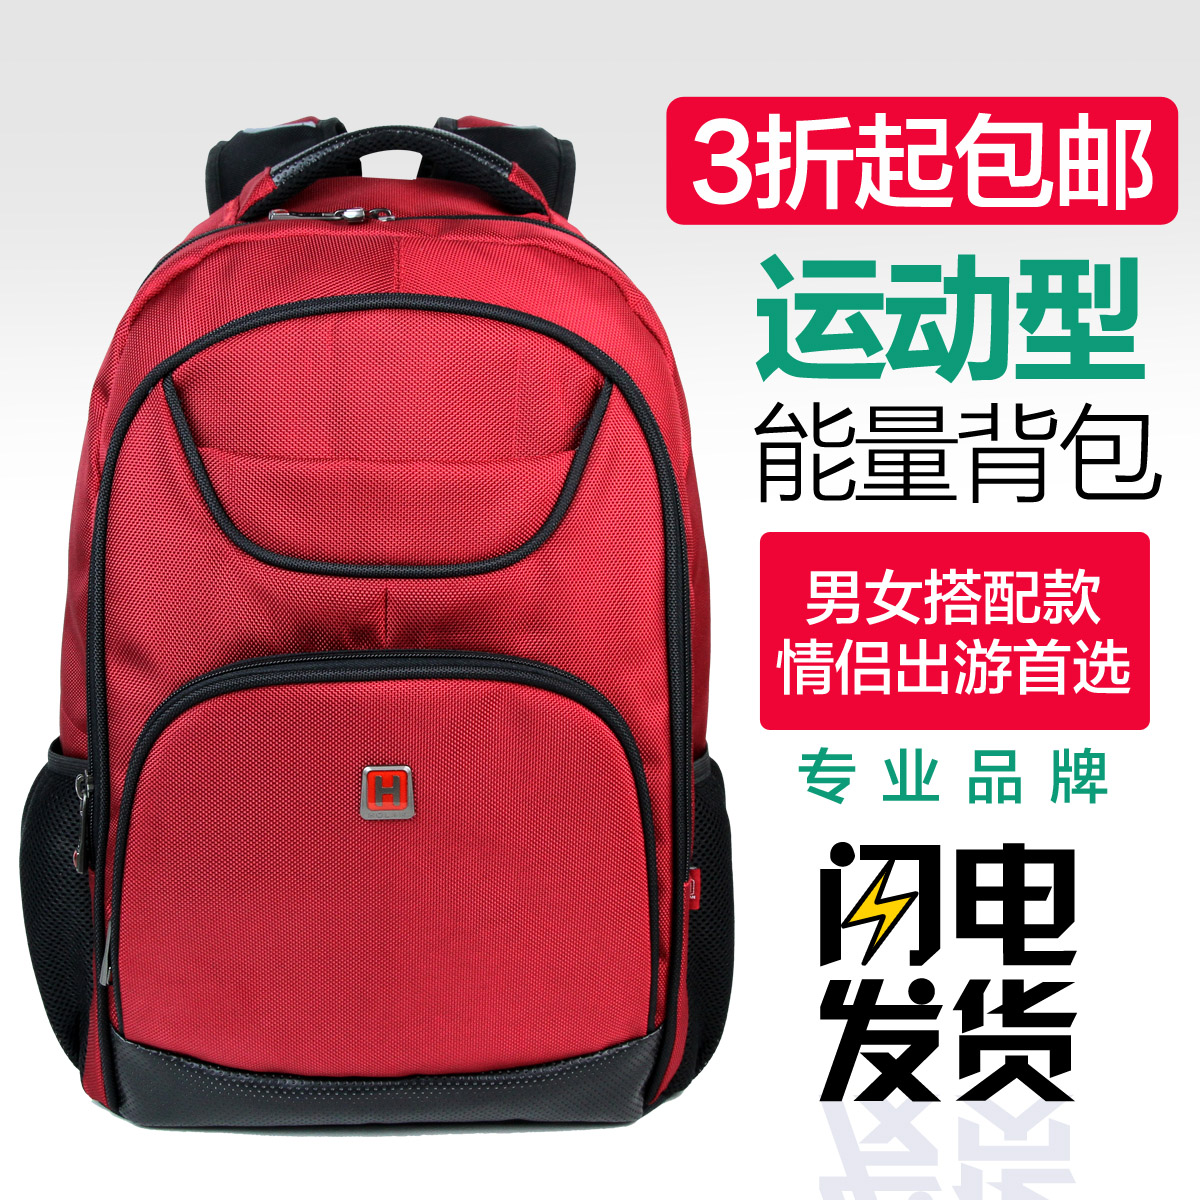 中国质造 男双肩包大容量旅行包休闲双肩包男旅游背包女潮中学生